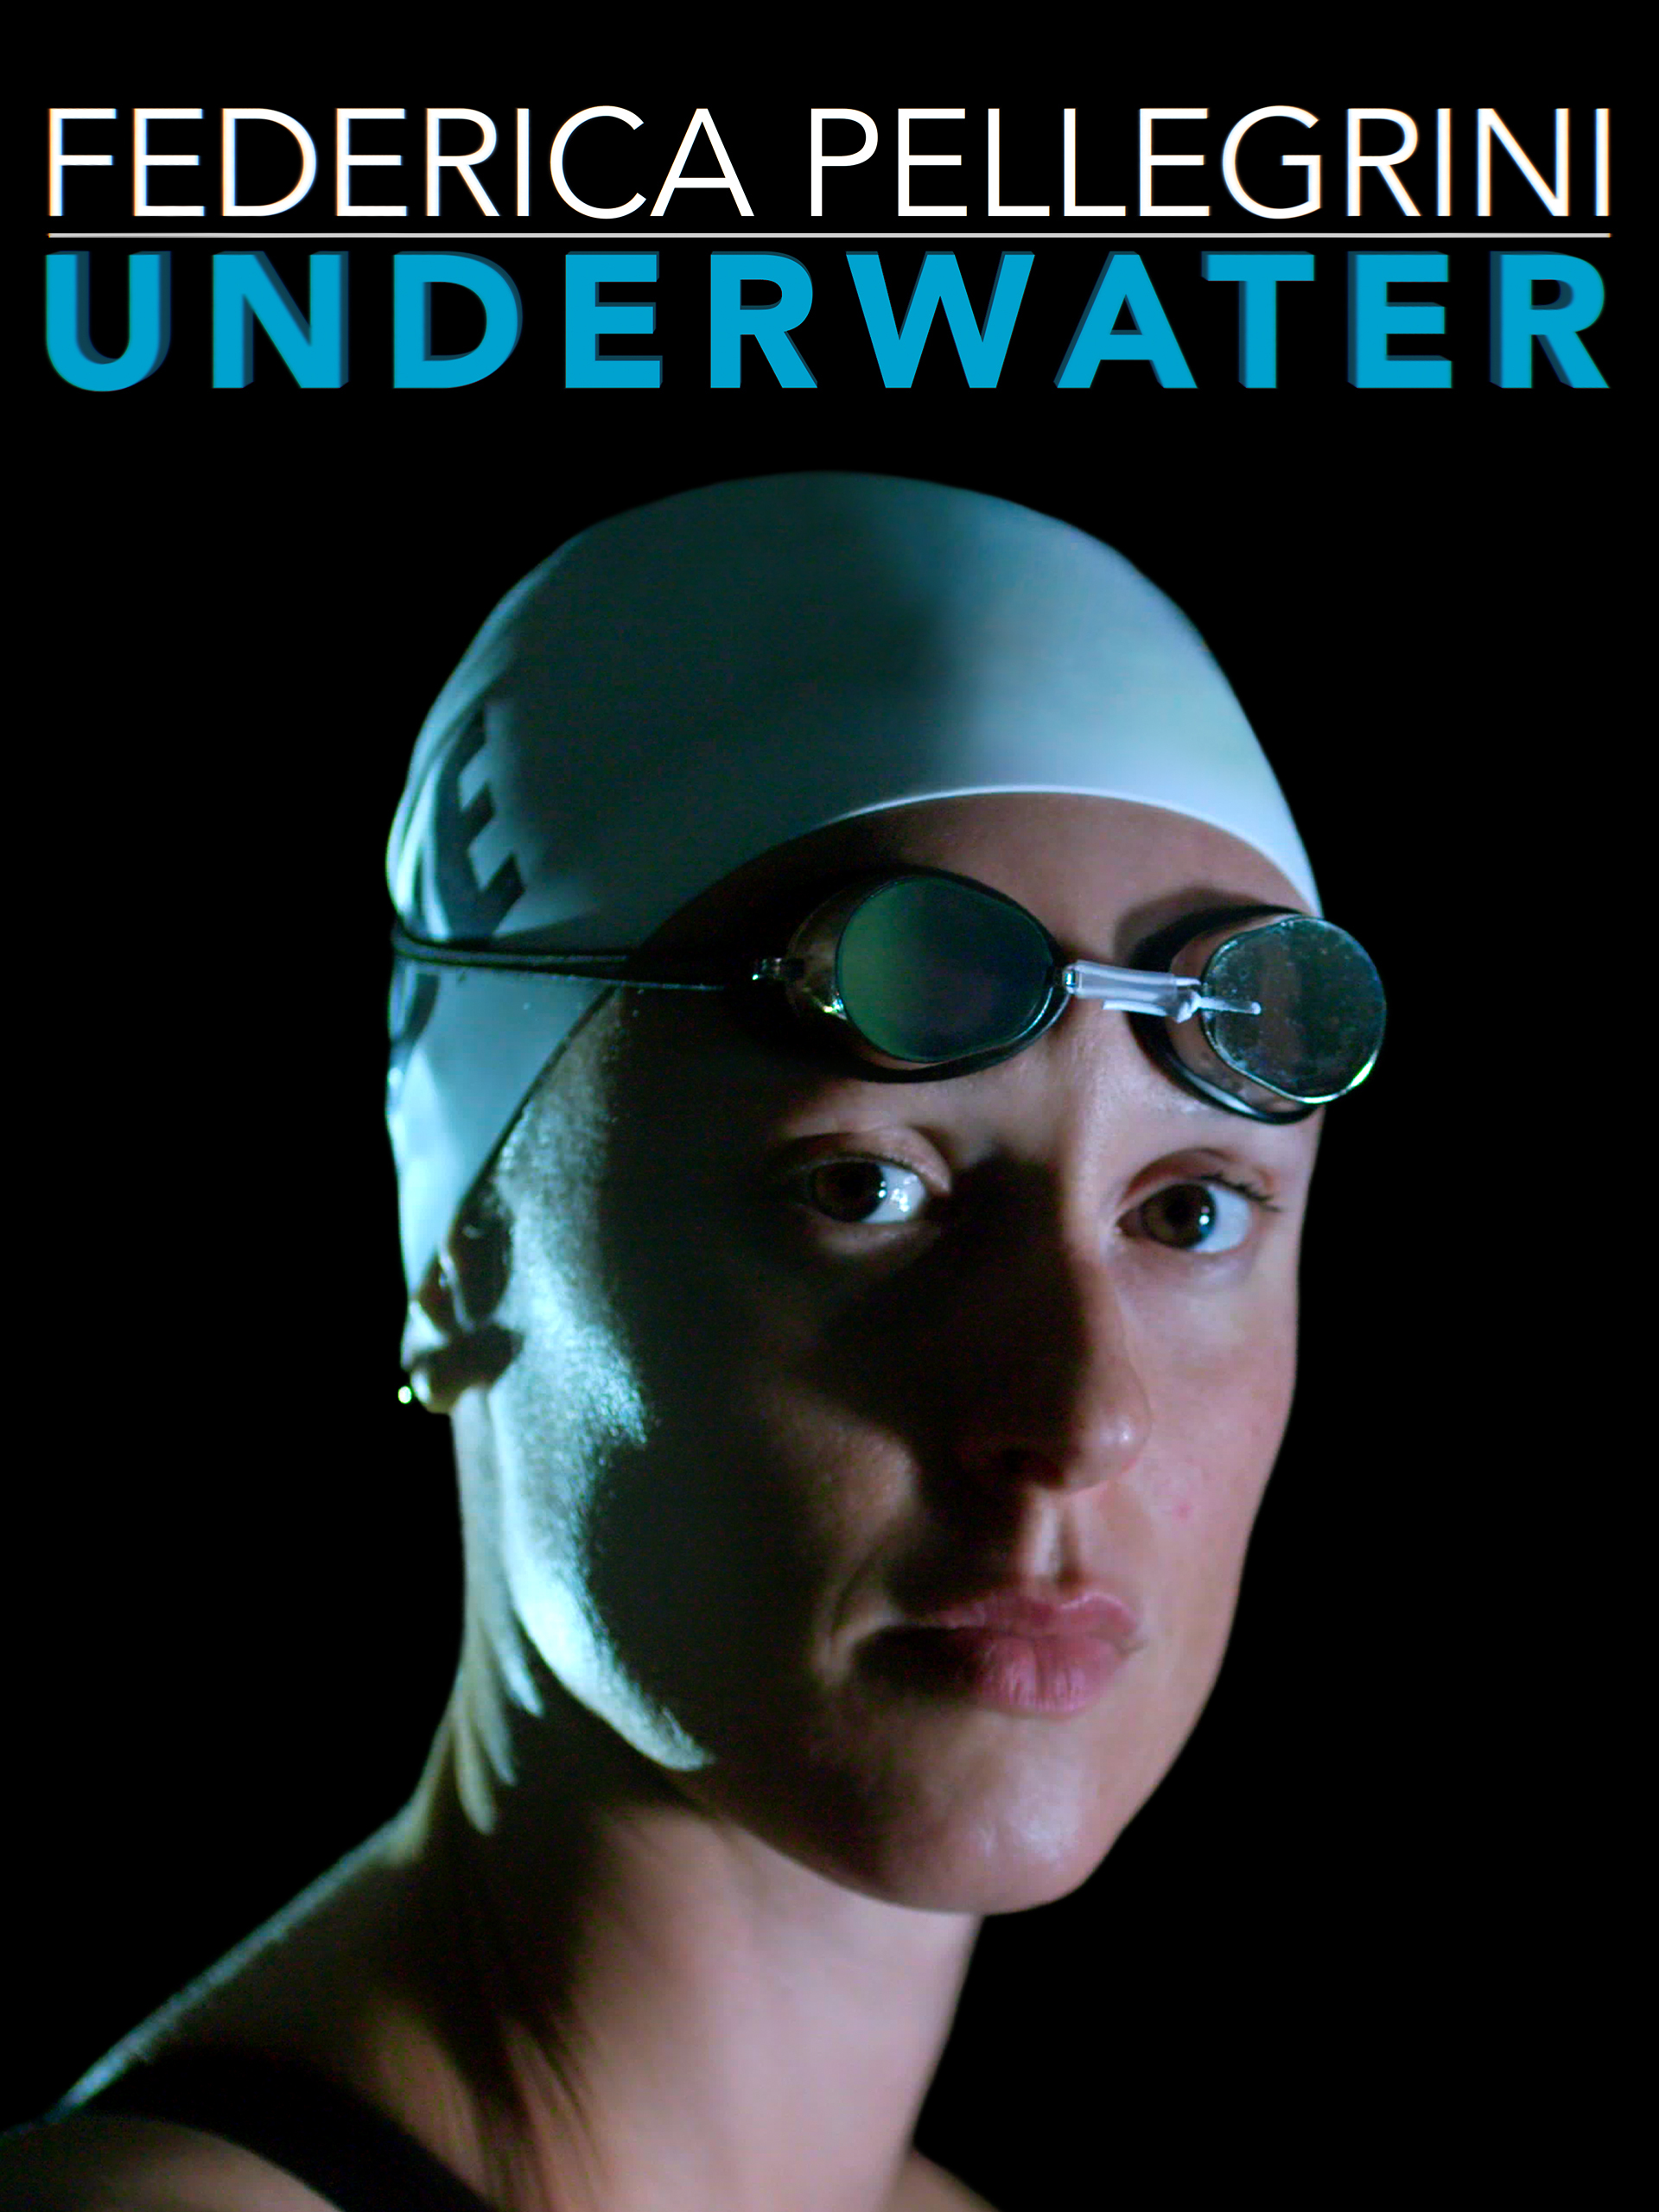 Underwater Federica Pellegrini2022